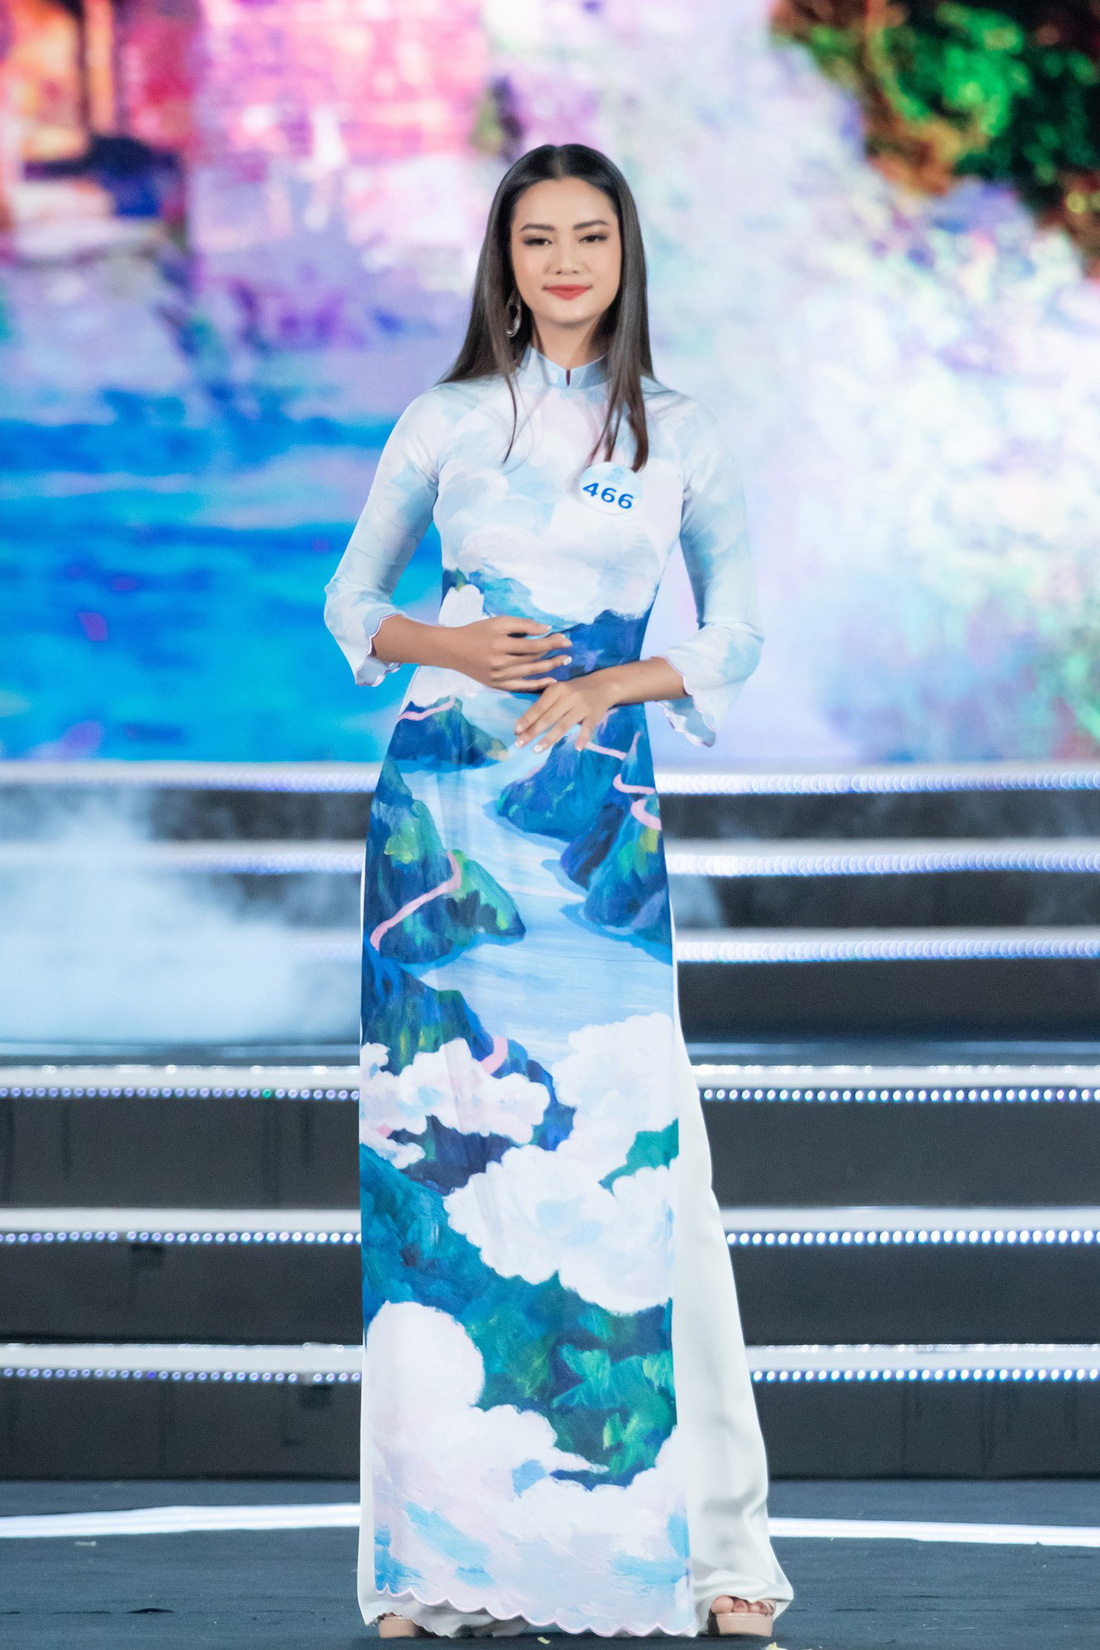 Bộ sưu tập áo dài đèo Hải Vân giúp Lương Thùy Linh đăng quang - Ảnh 9.